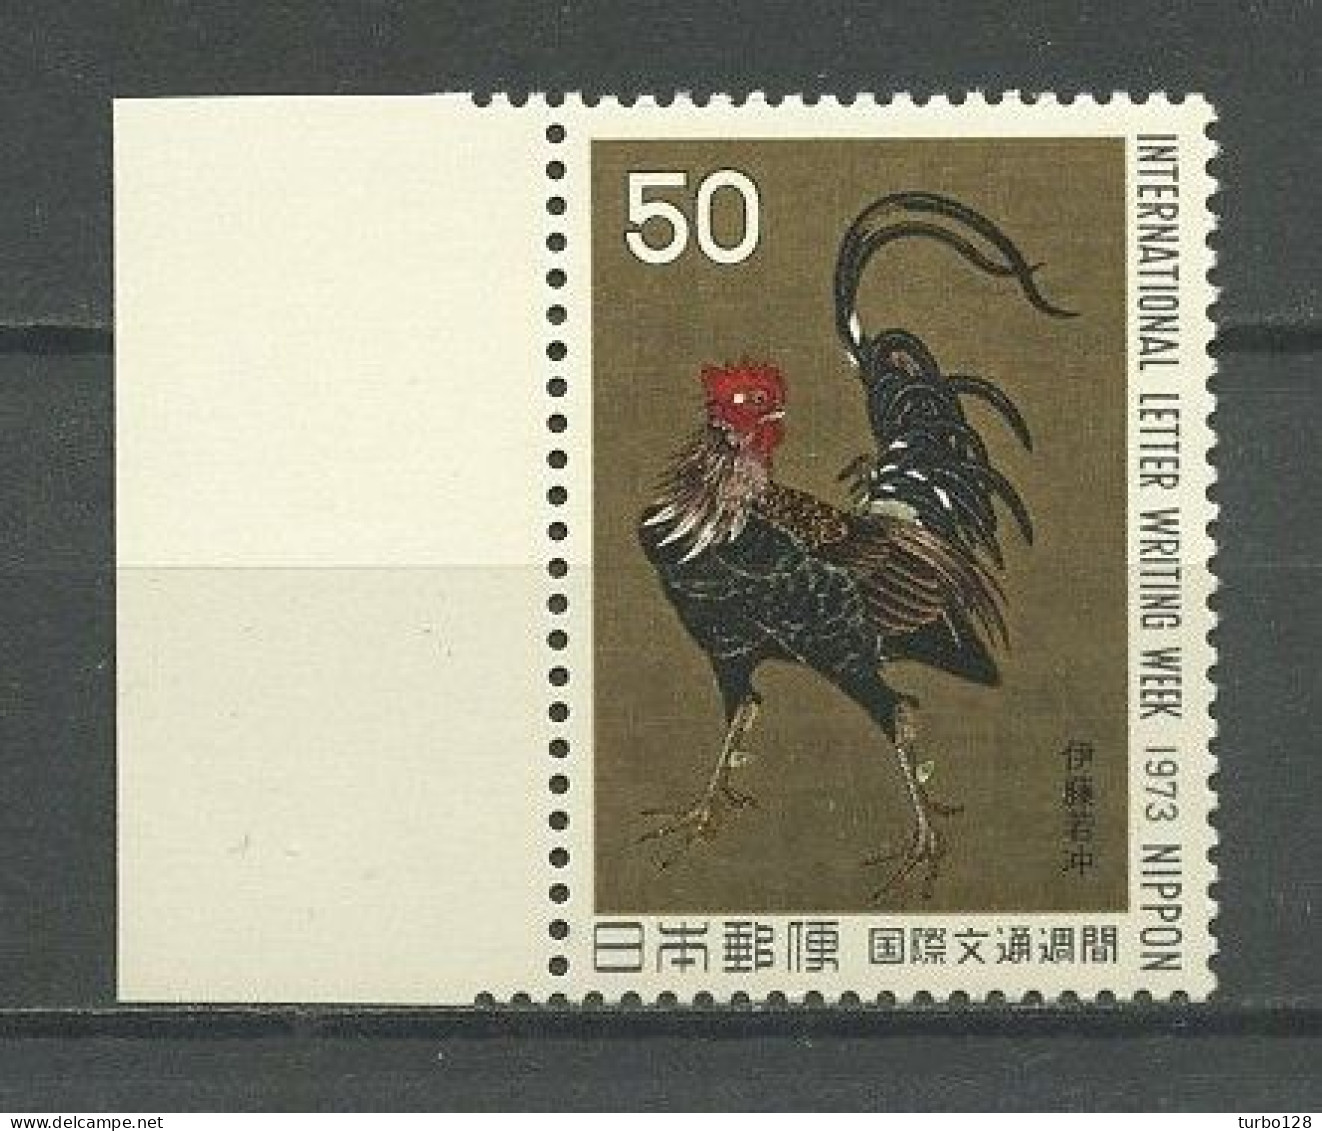 JAPON 1973 N° 1091 ** Neuf MNH Superbe C 1,25 € Faune Oiseaux Coq Guerrier De J. Ito La Lettre Peintures Birds Painting - Nuevos